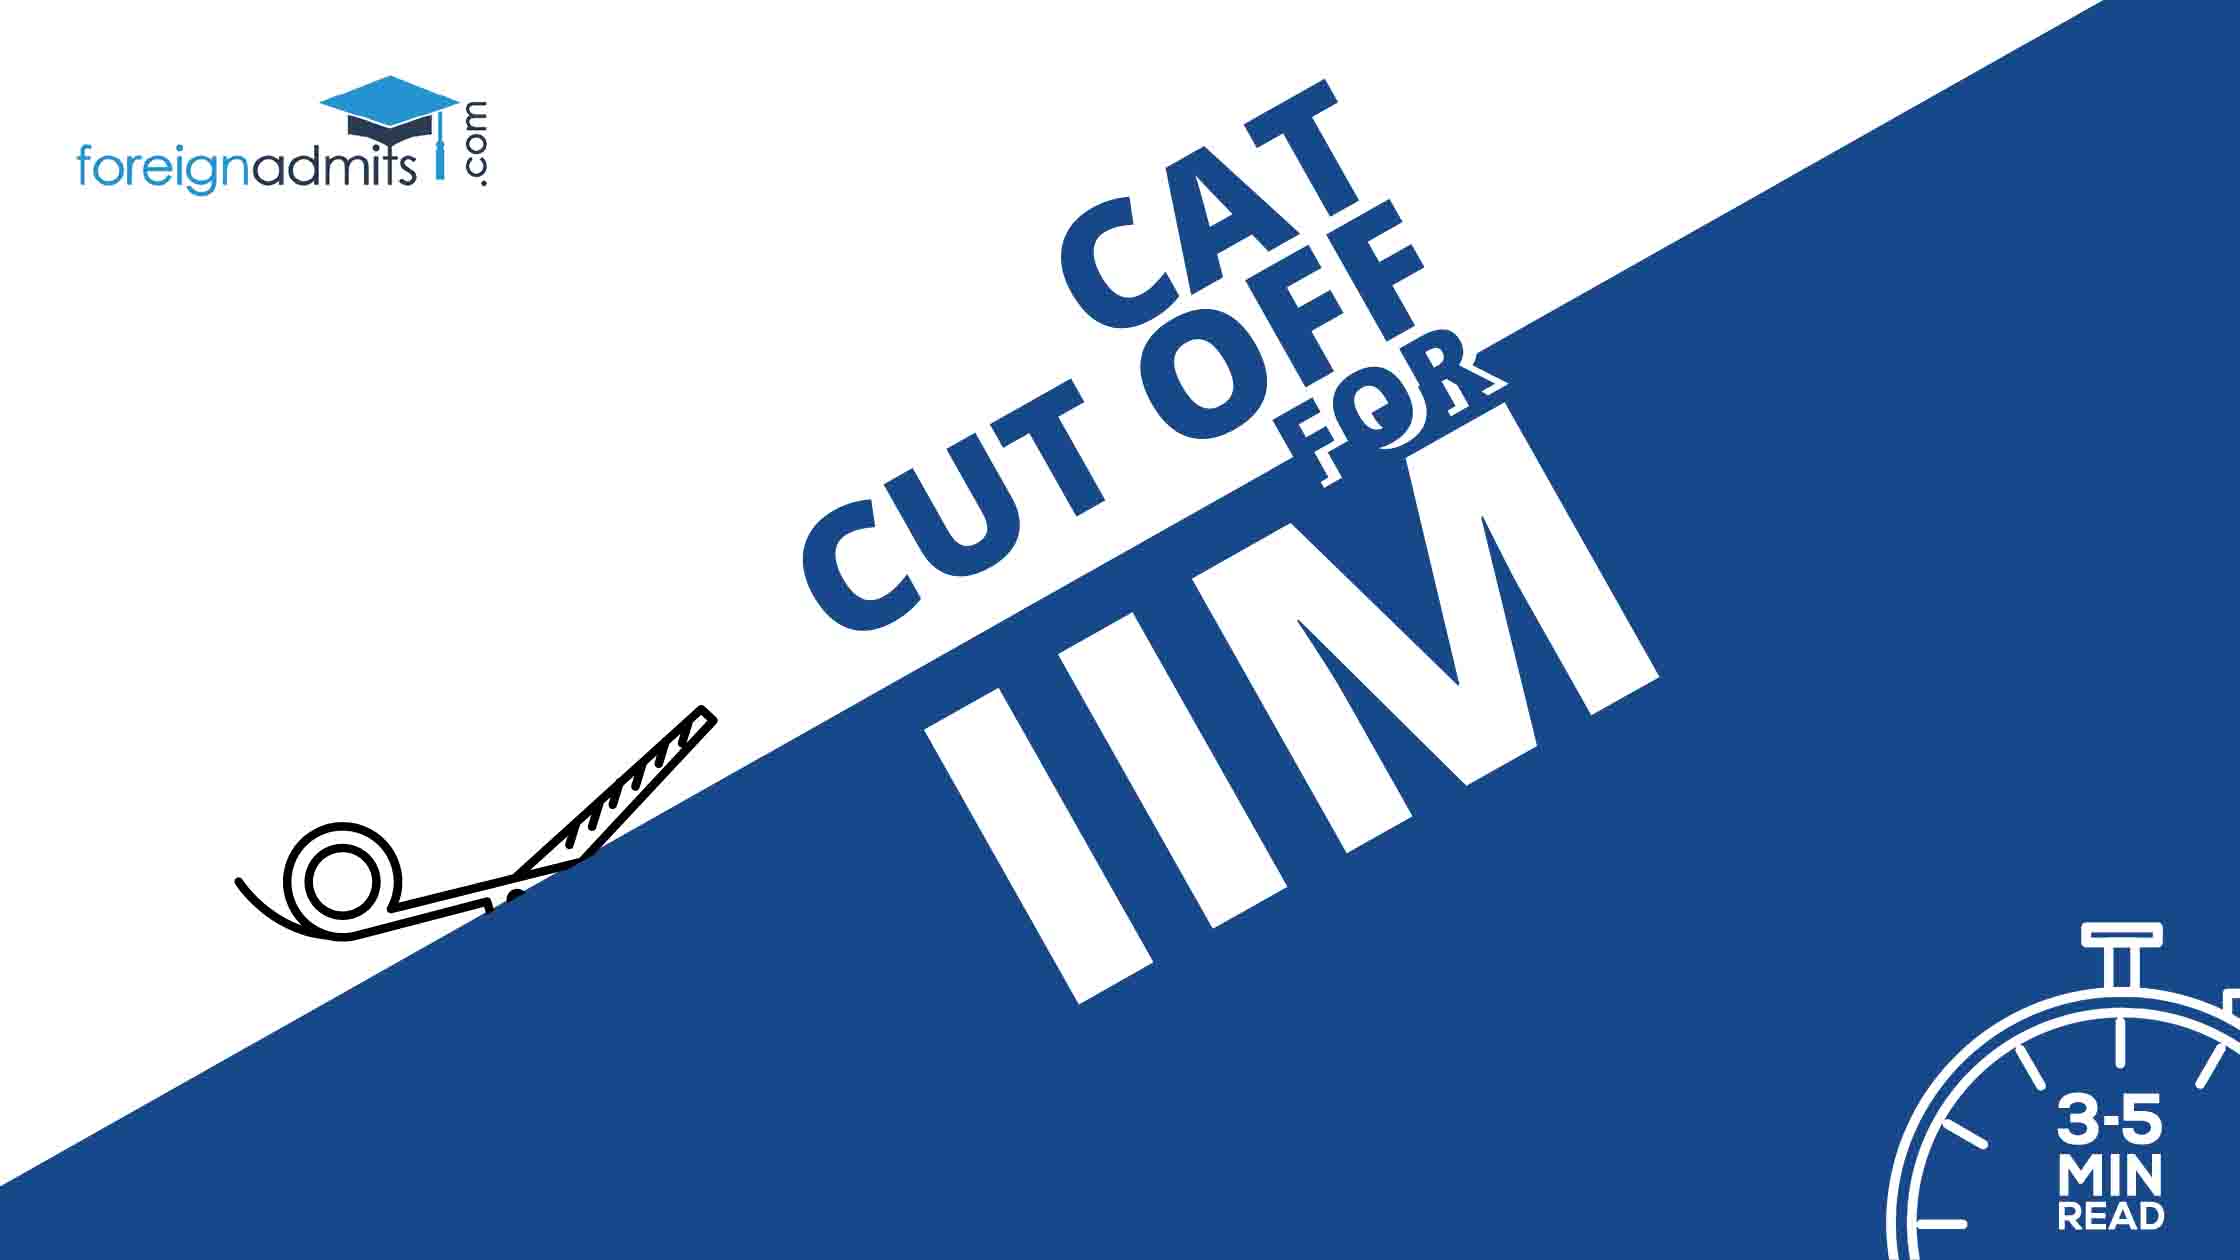 CAT Cut Off for IIM [2021 Update]